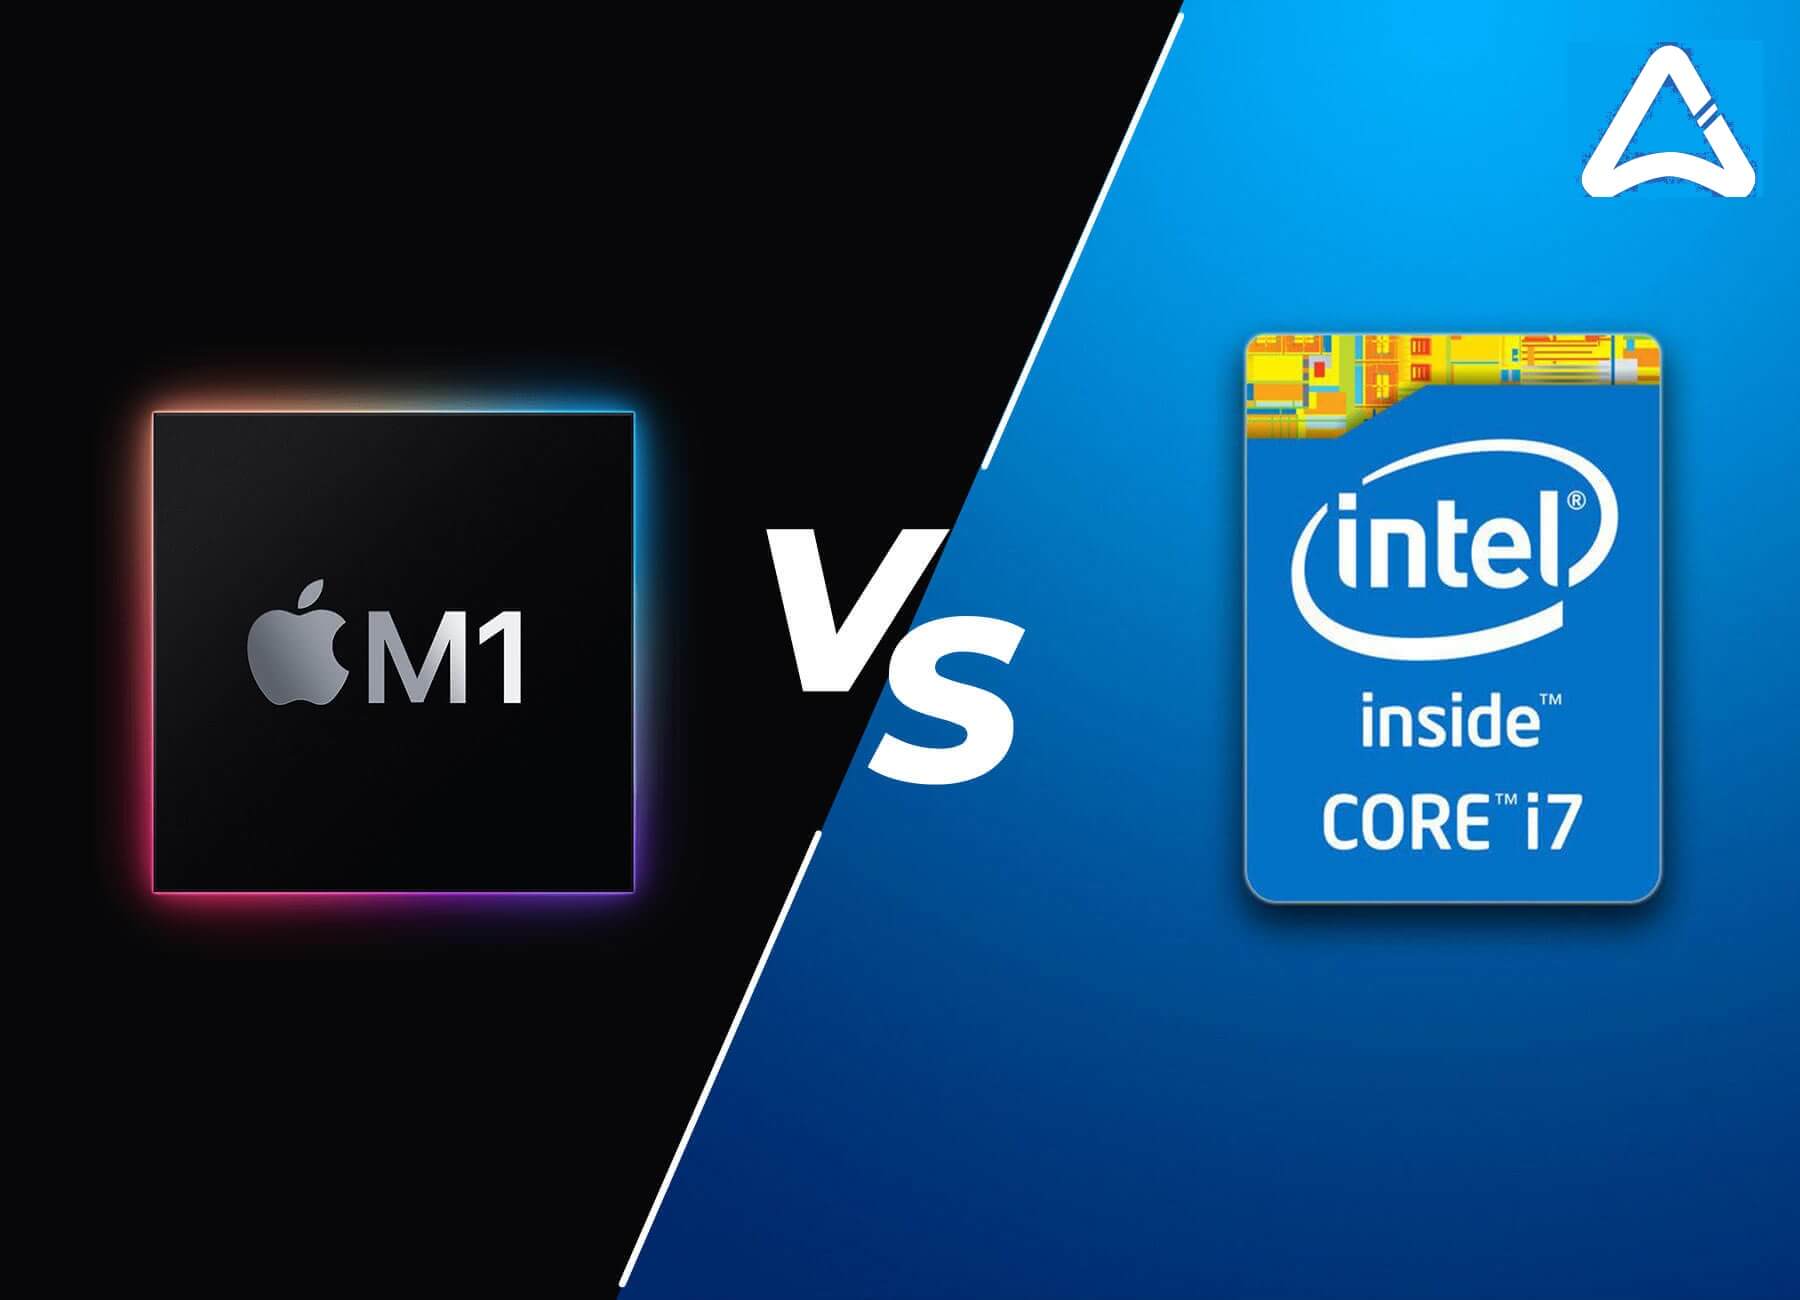 M1 Chip Vs Intel i7